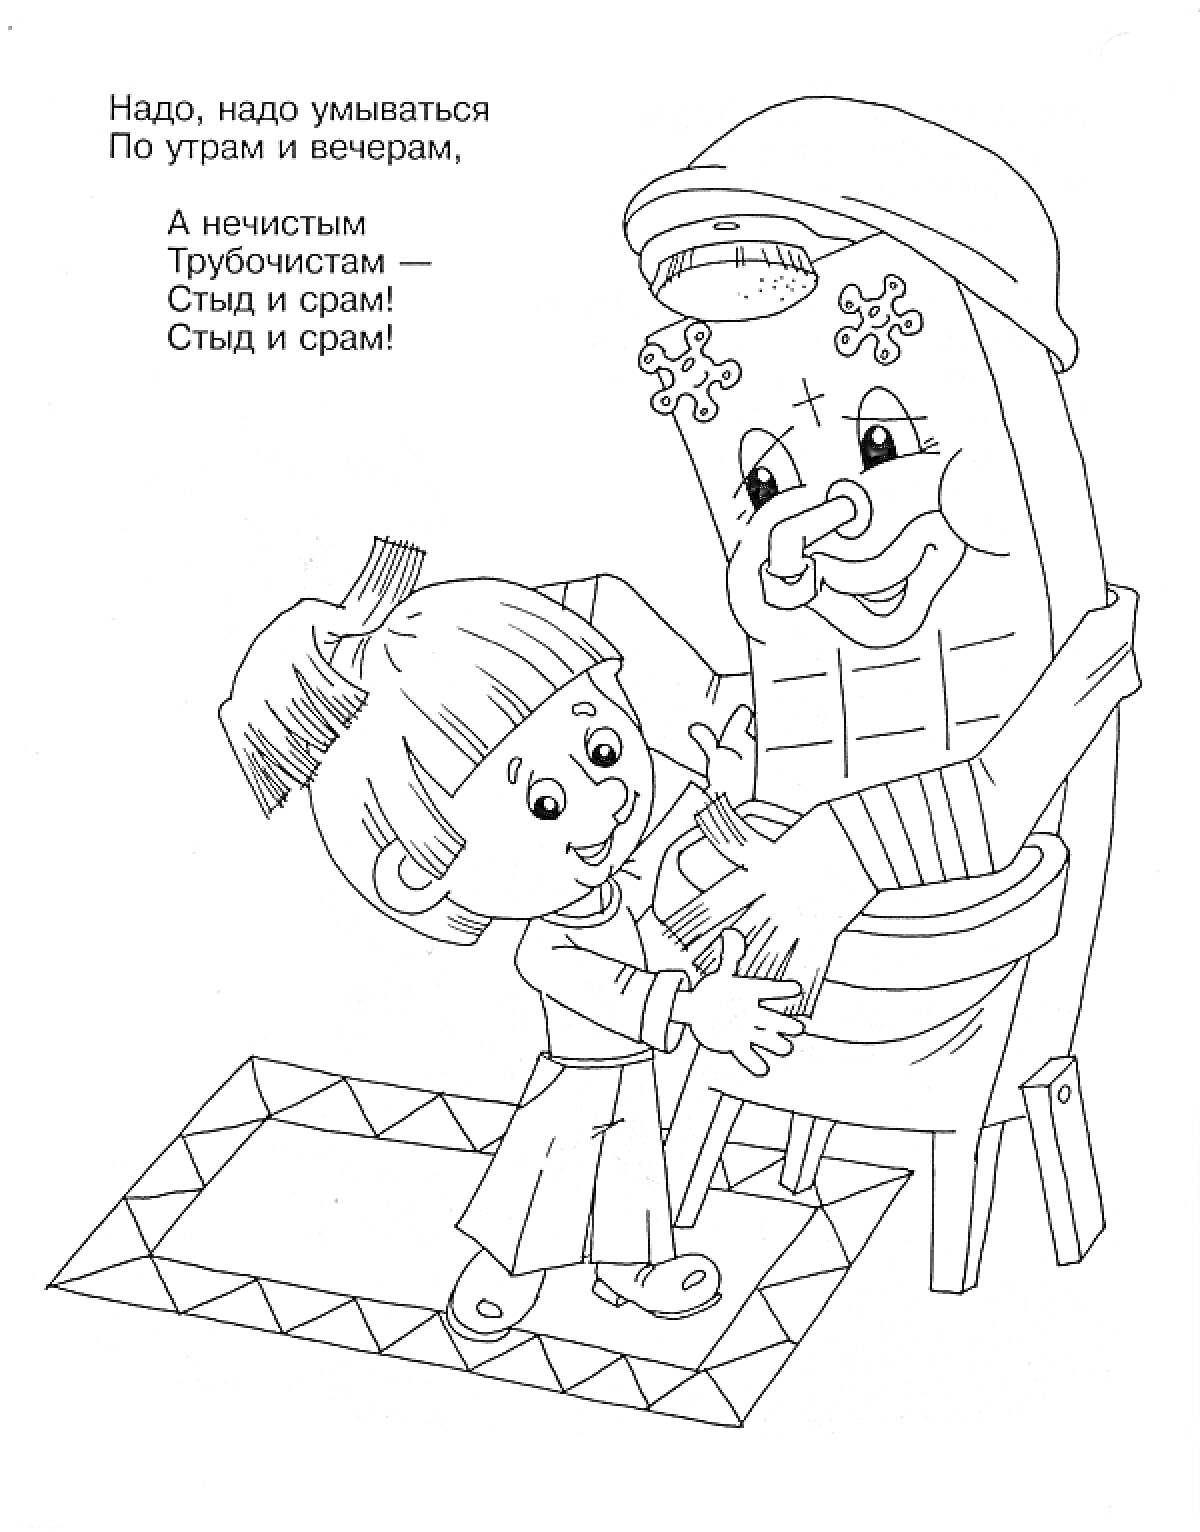 Мальчик и Мойдодыр на коврике с кувшином в руках